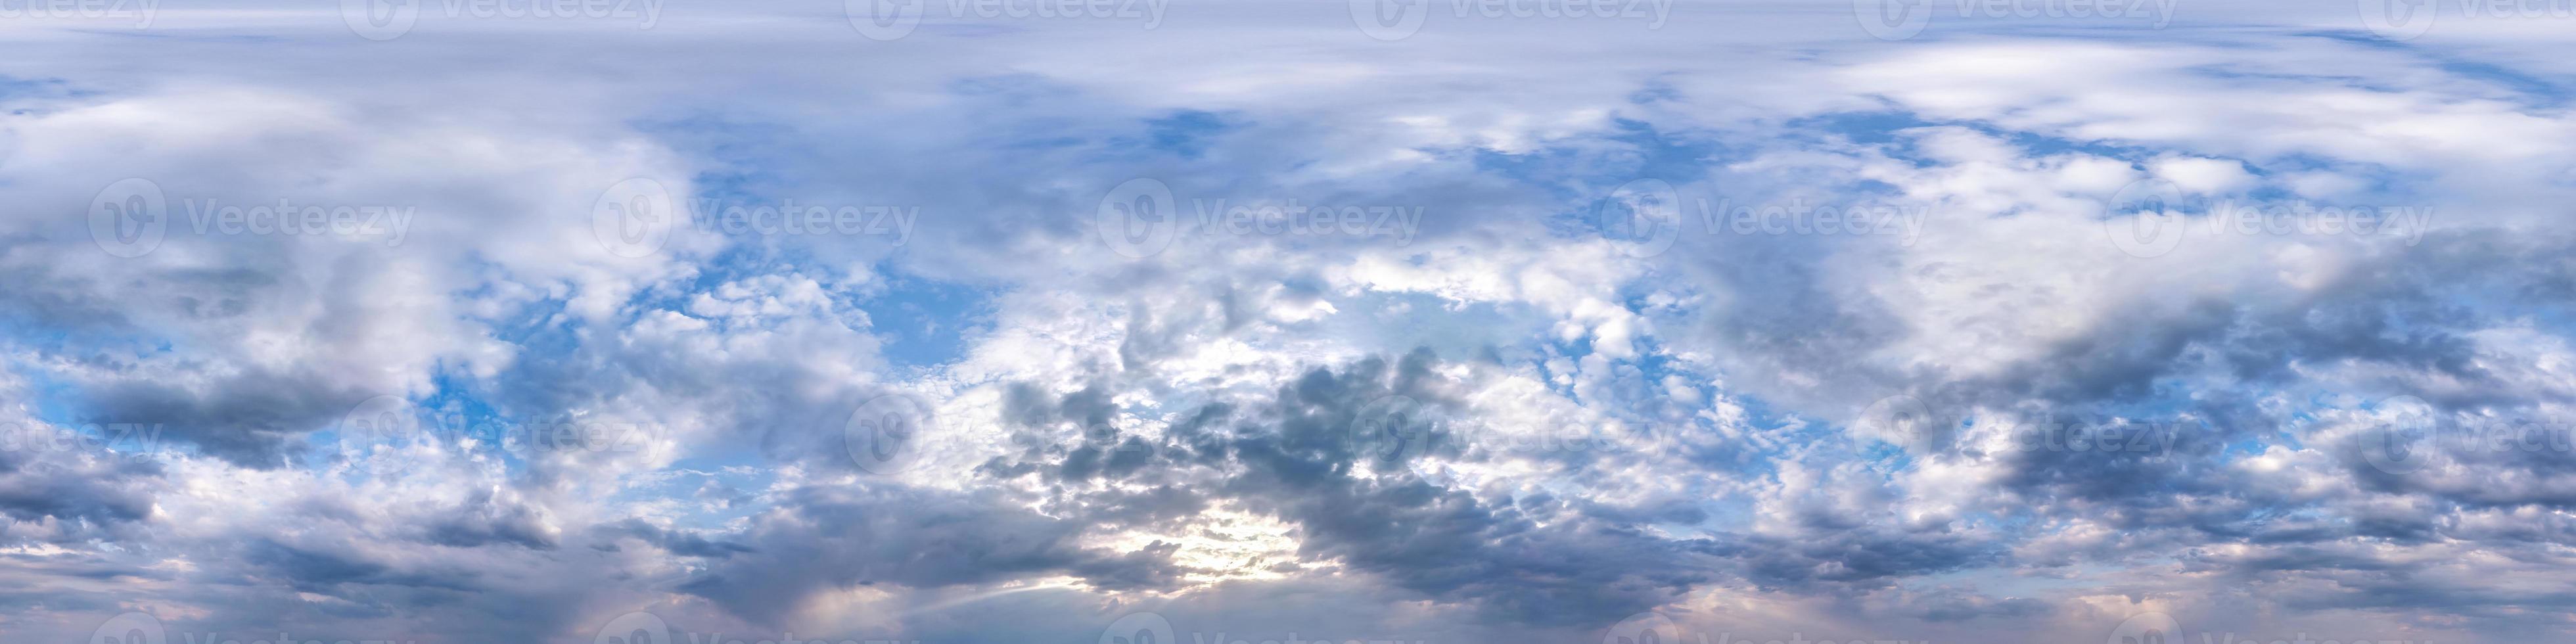 sömlös hdri panorama 360 graders vinkelvy blå himmel med vackra fluffiga cumulusmoln före regn med zenit för användning i 3d-grafik eller spelutveckling som skydome eller redigera drönarbild foto